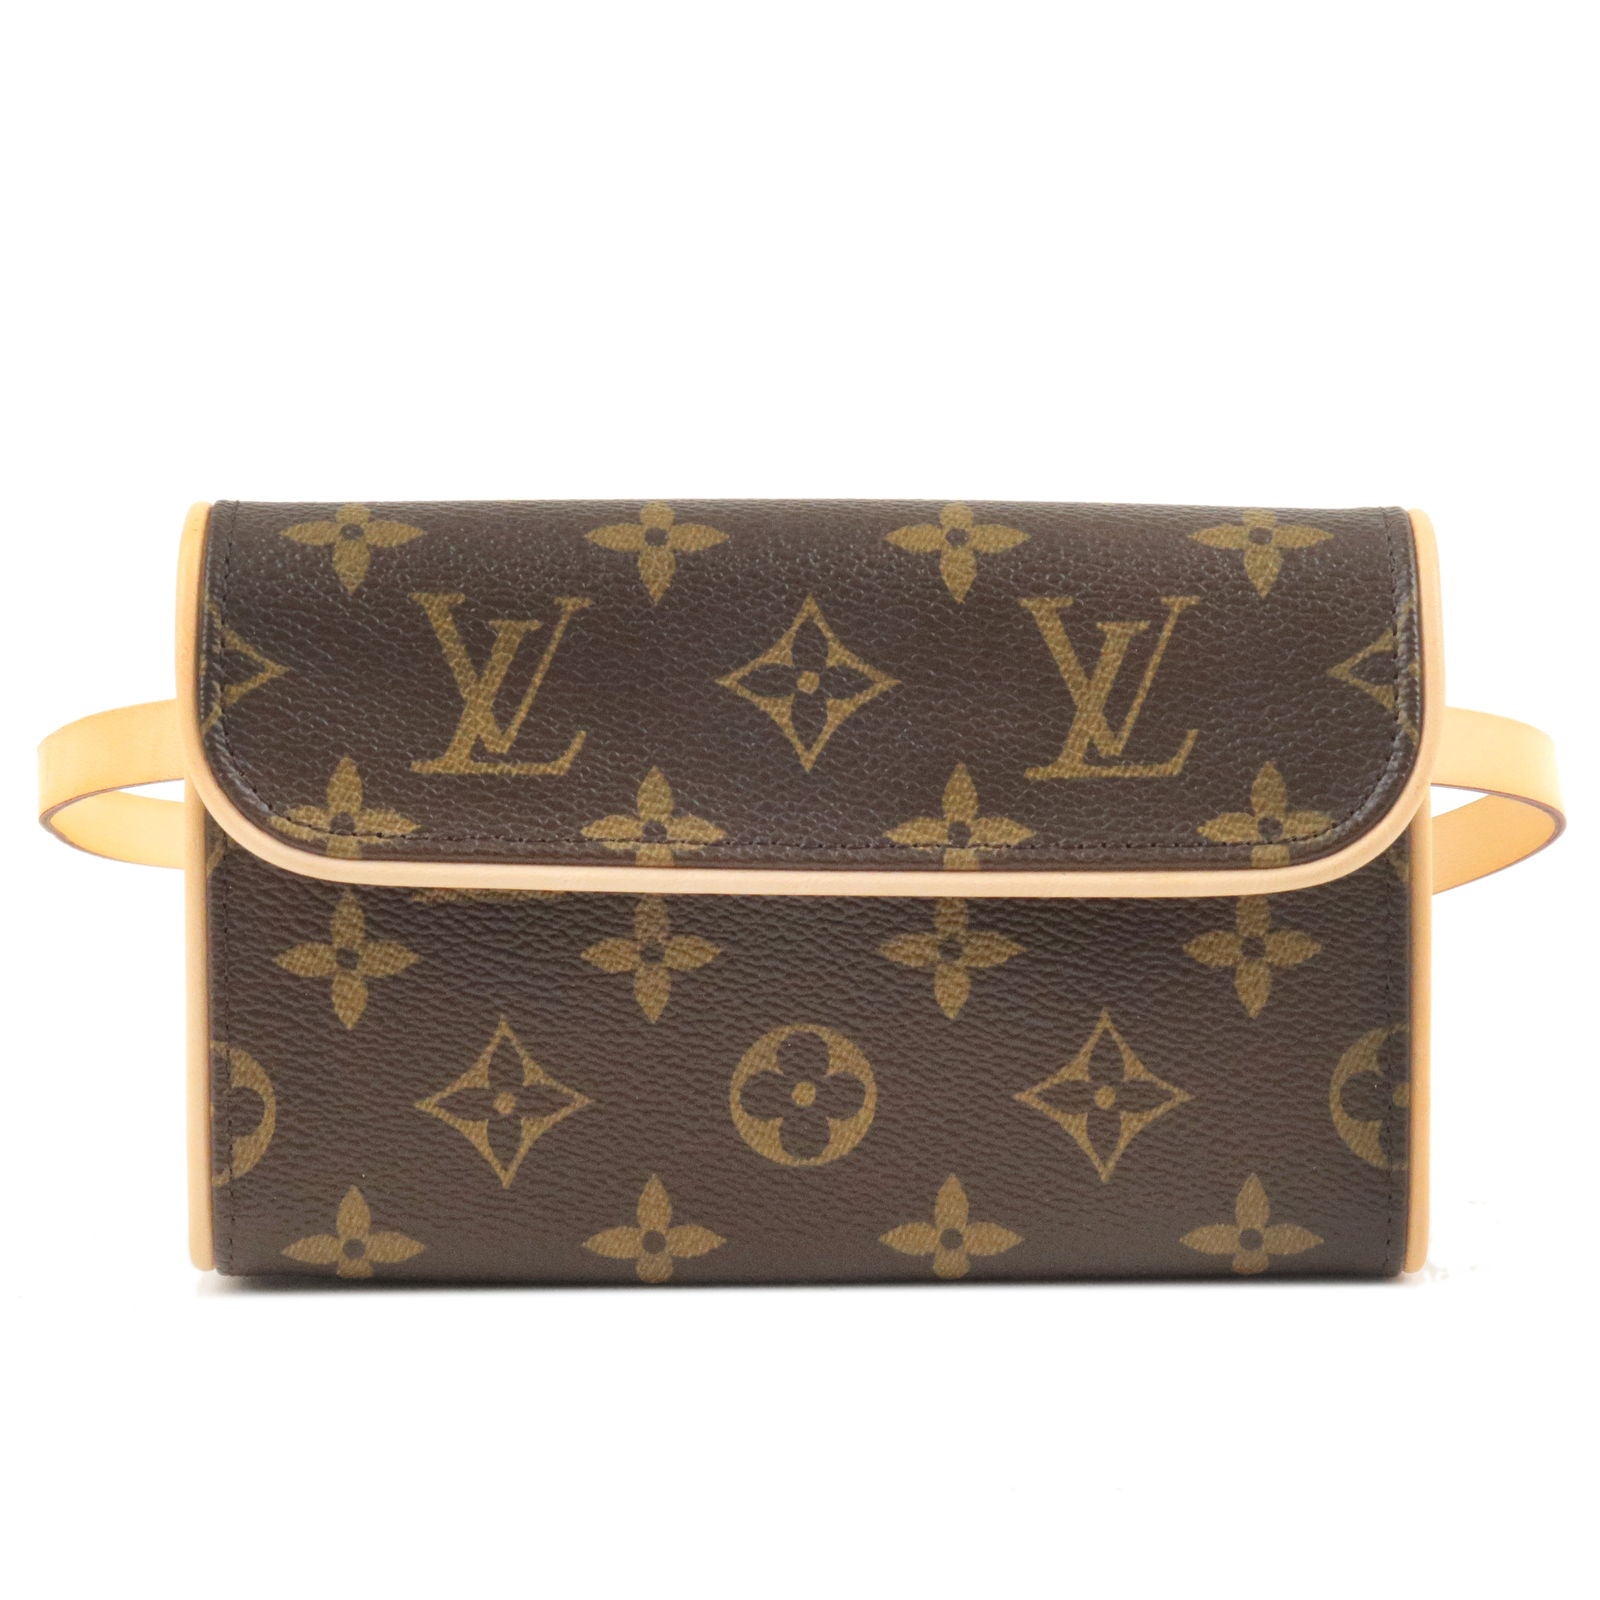 Louis Vuitton Monogram Florentine Pochette Belt Bag Size Medium